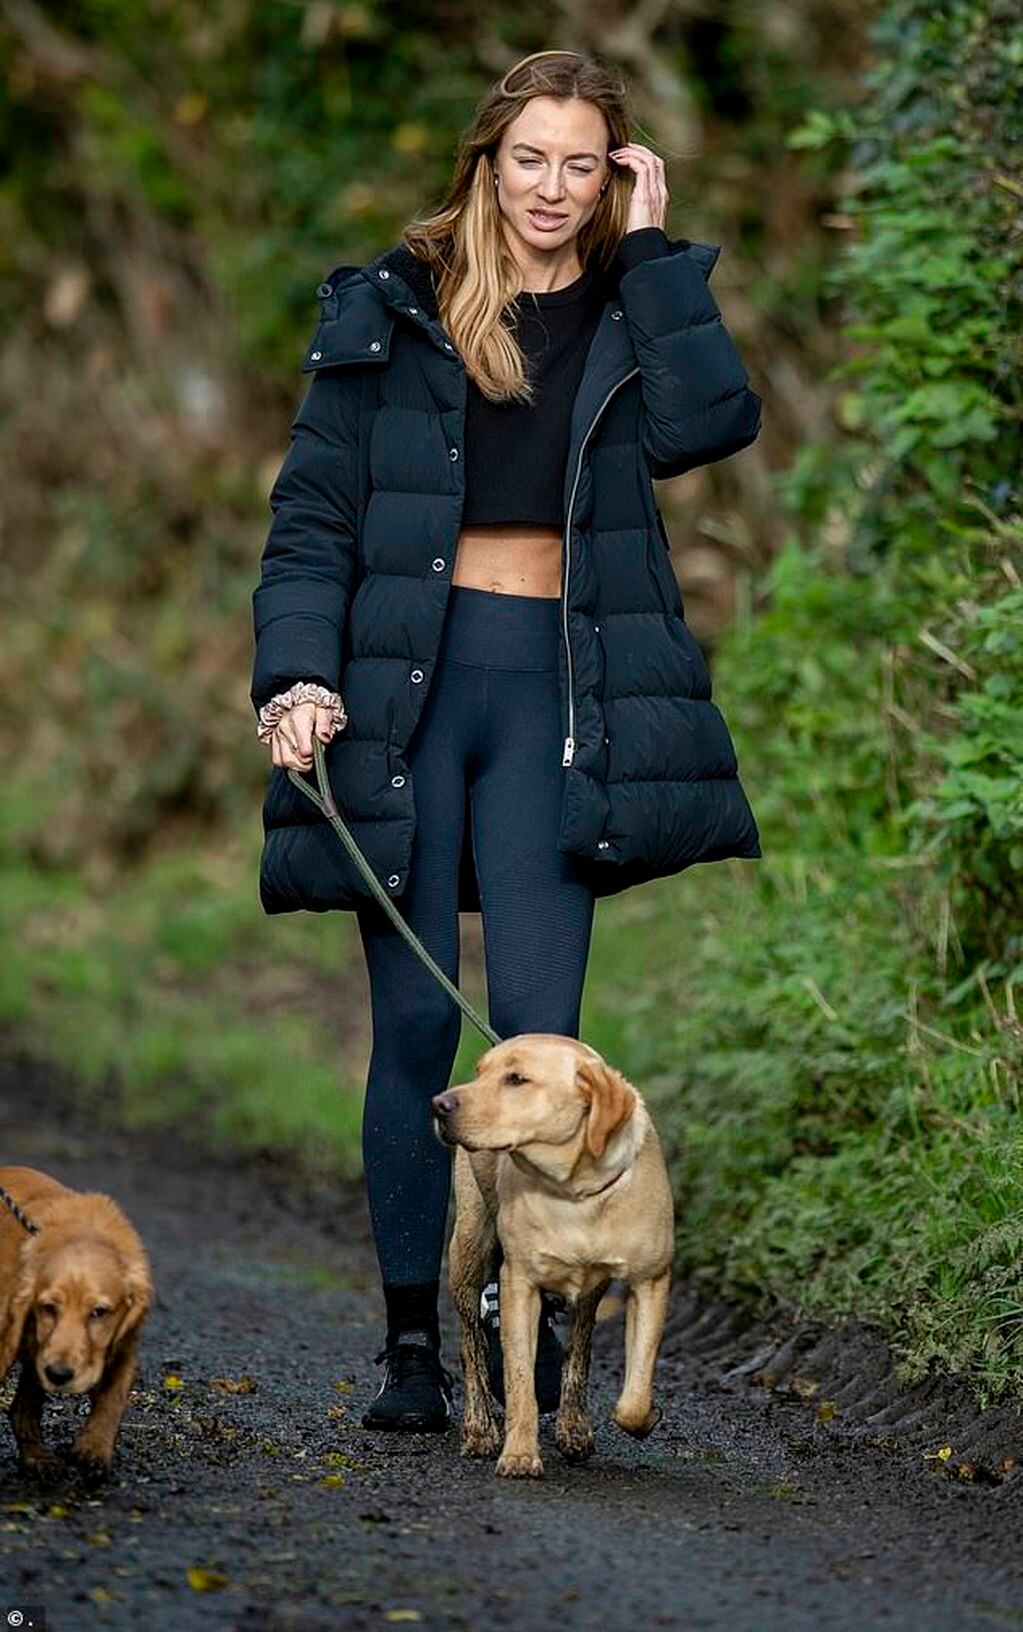 La ex novia de Ryan Giggs, Kate Greville, apareció en 2020 con un labio magullado mientras pasea al perro